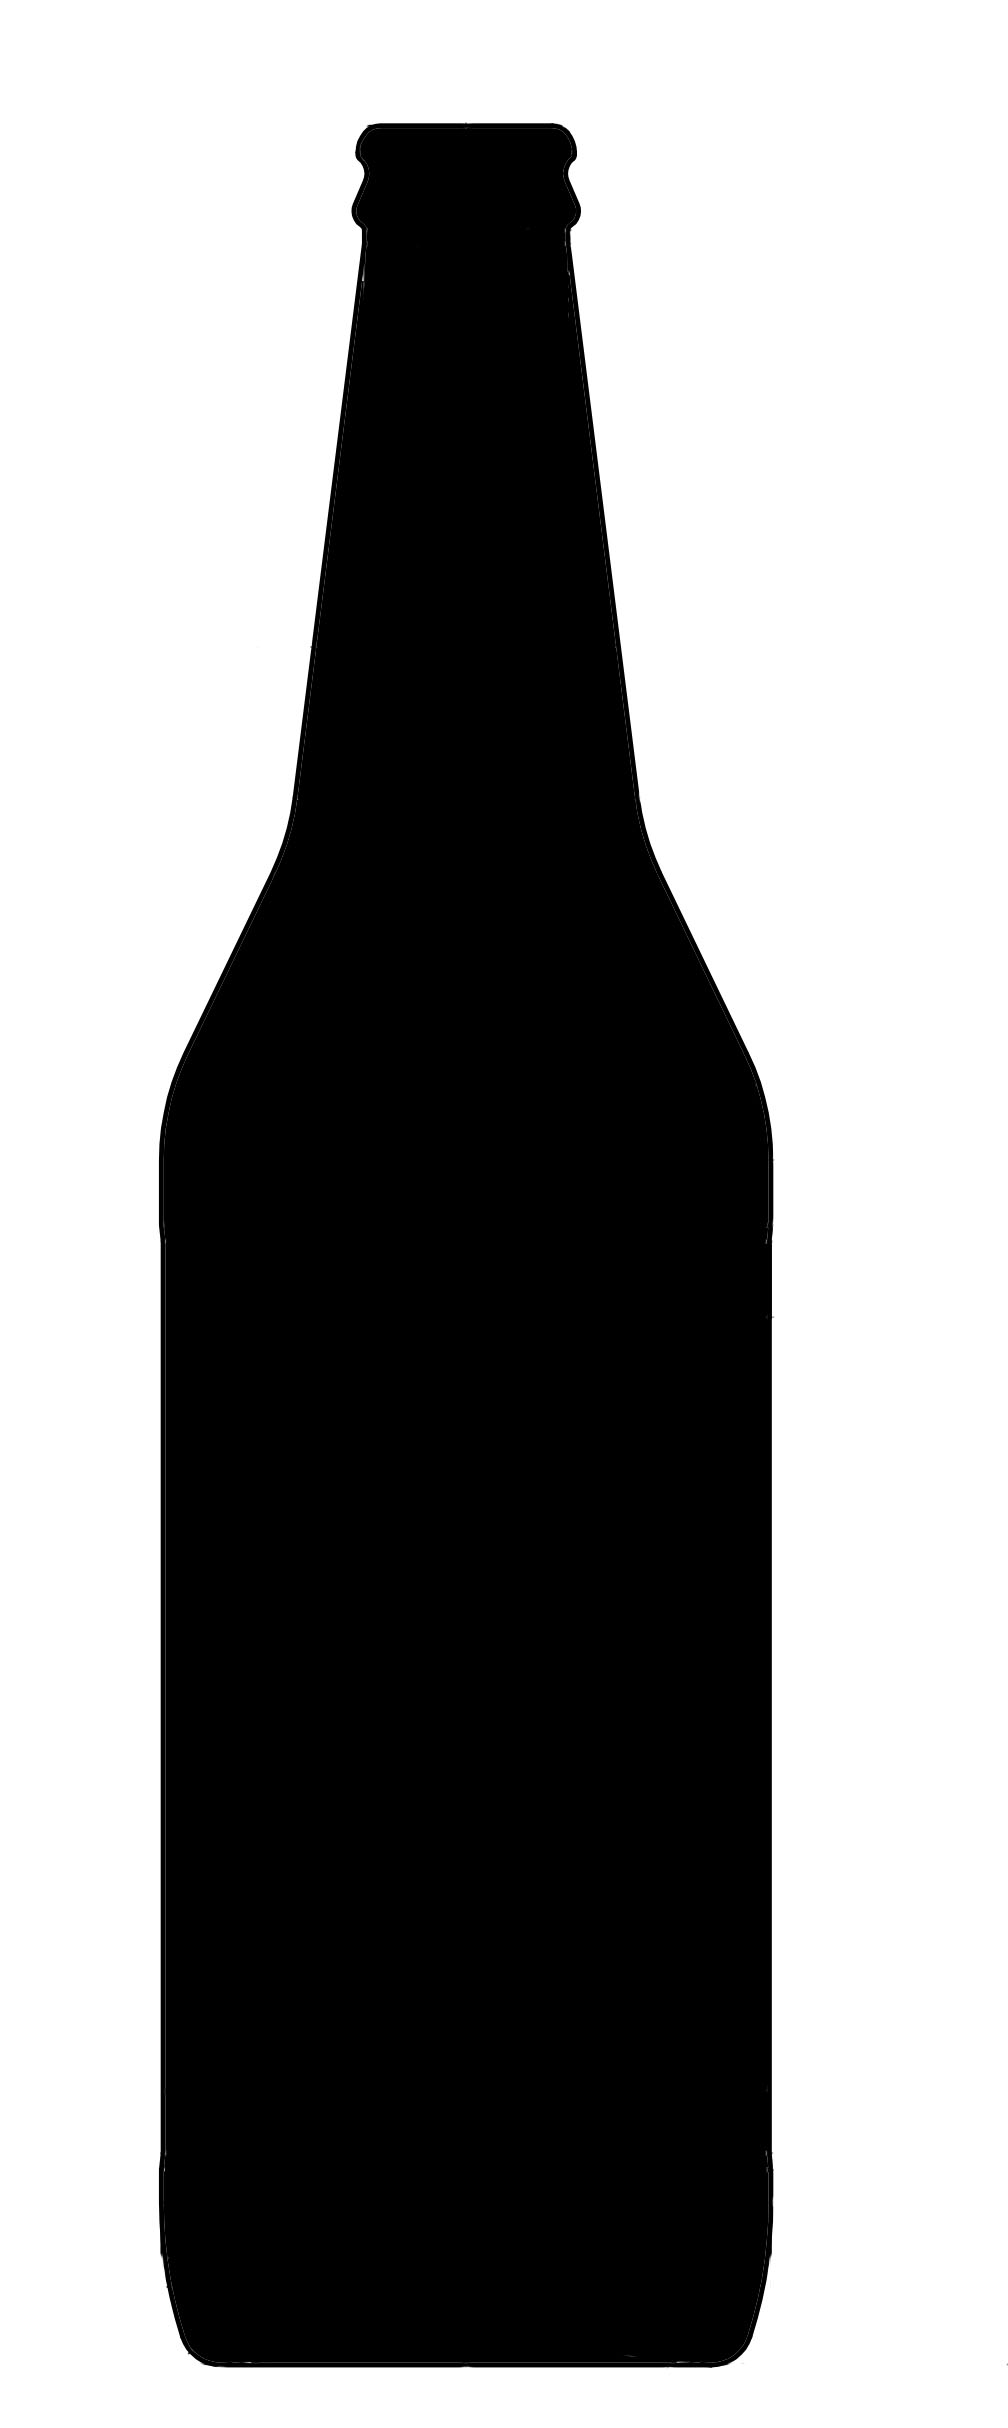 Outline Of Alcohol Pop Bottle